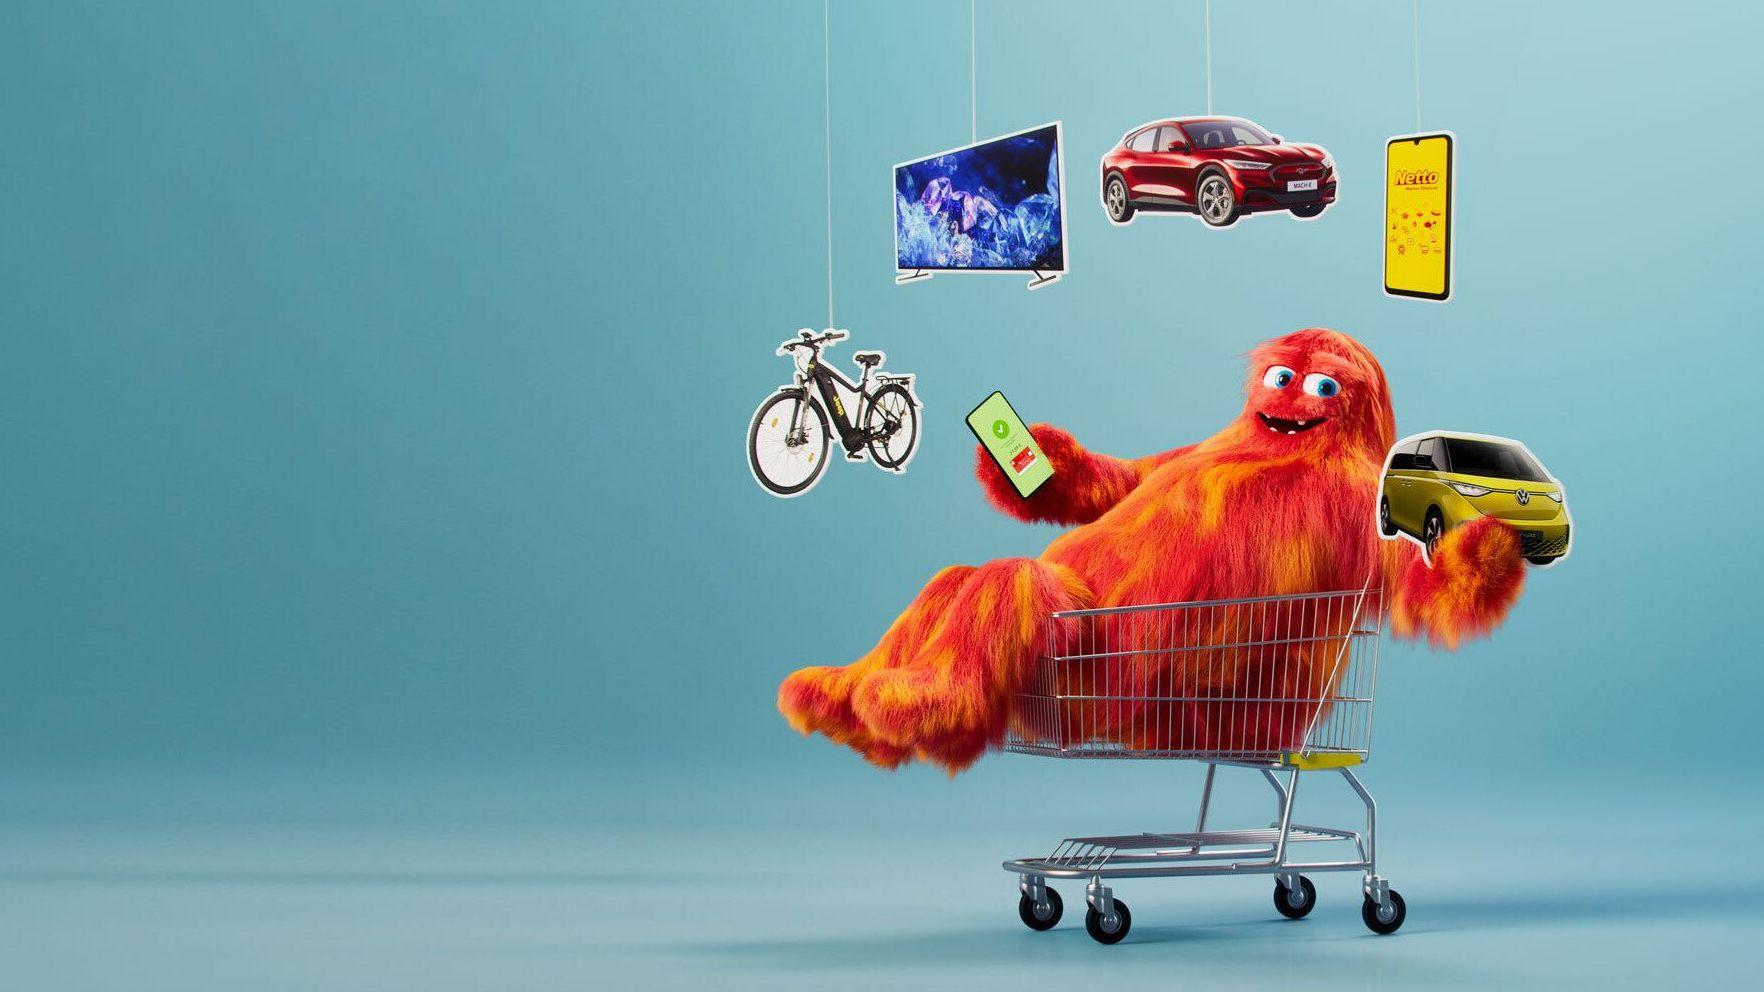 Gewinnspiel-Kampagnenbild zeigt ein Monster im Einkaufswagen, welches mit Gewinnen jongliert